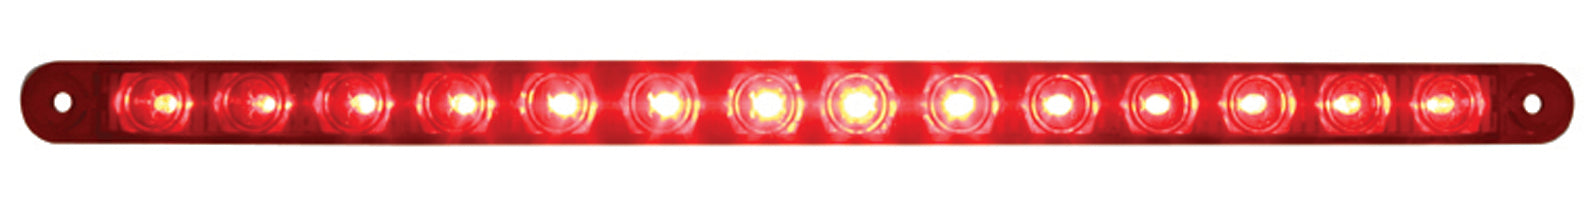 14 LED 12 Inch Turn Signal Light Bar - Red LED - Red Lens